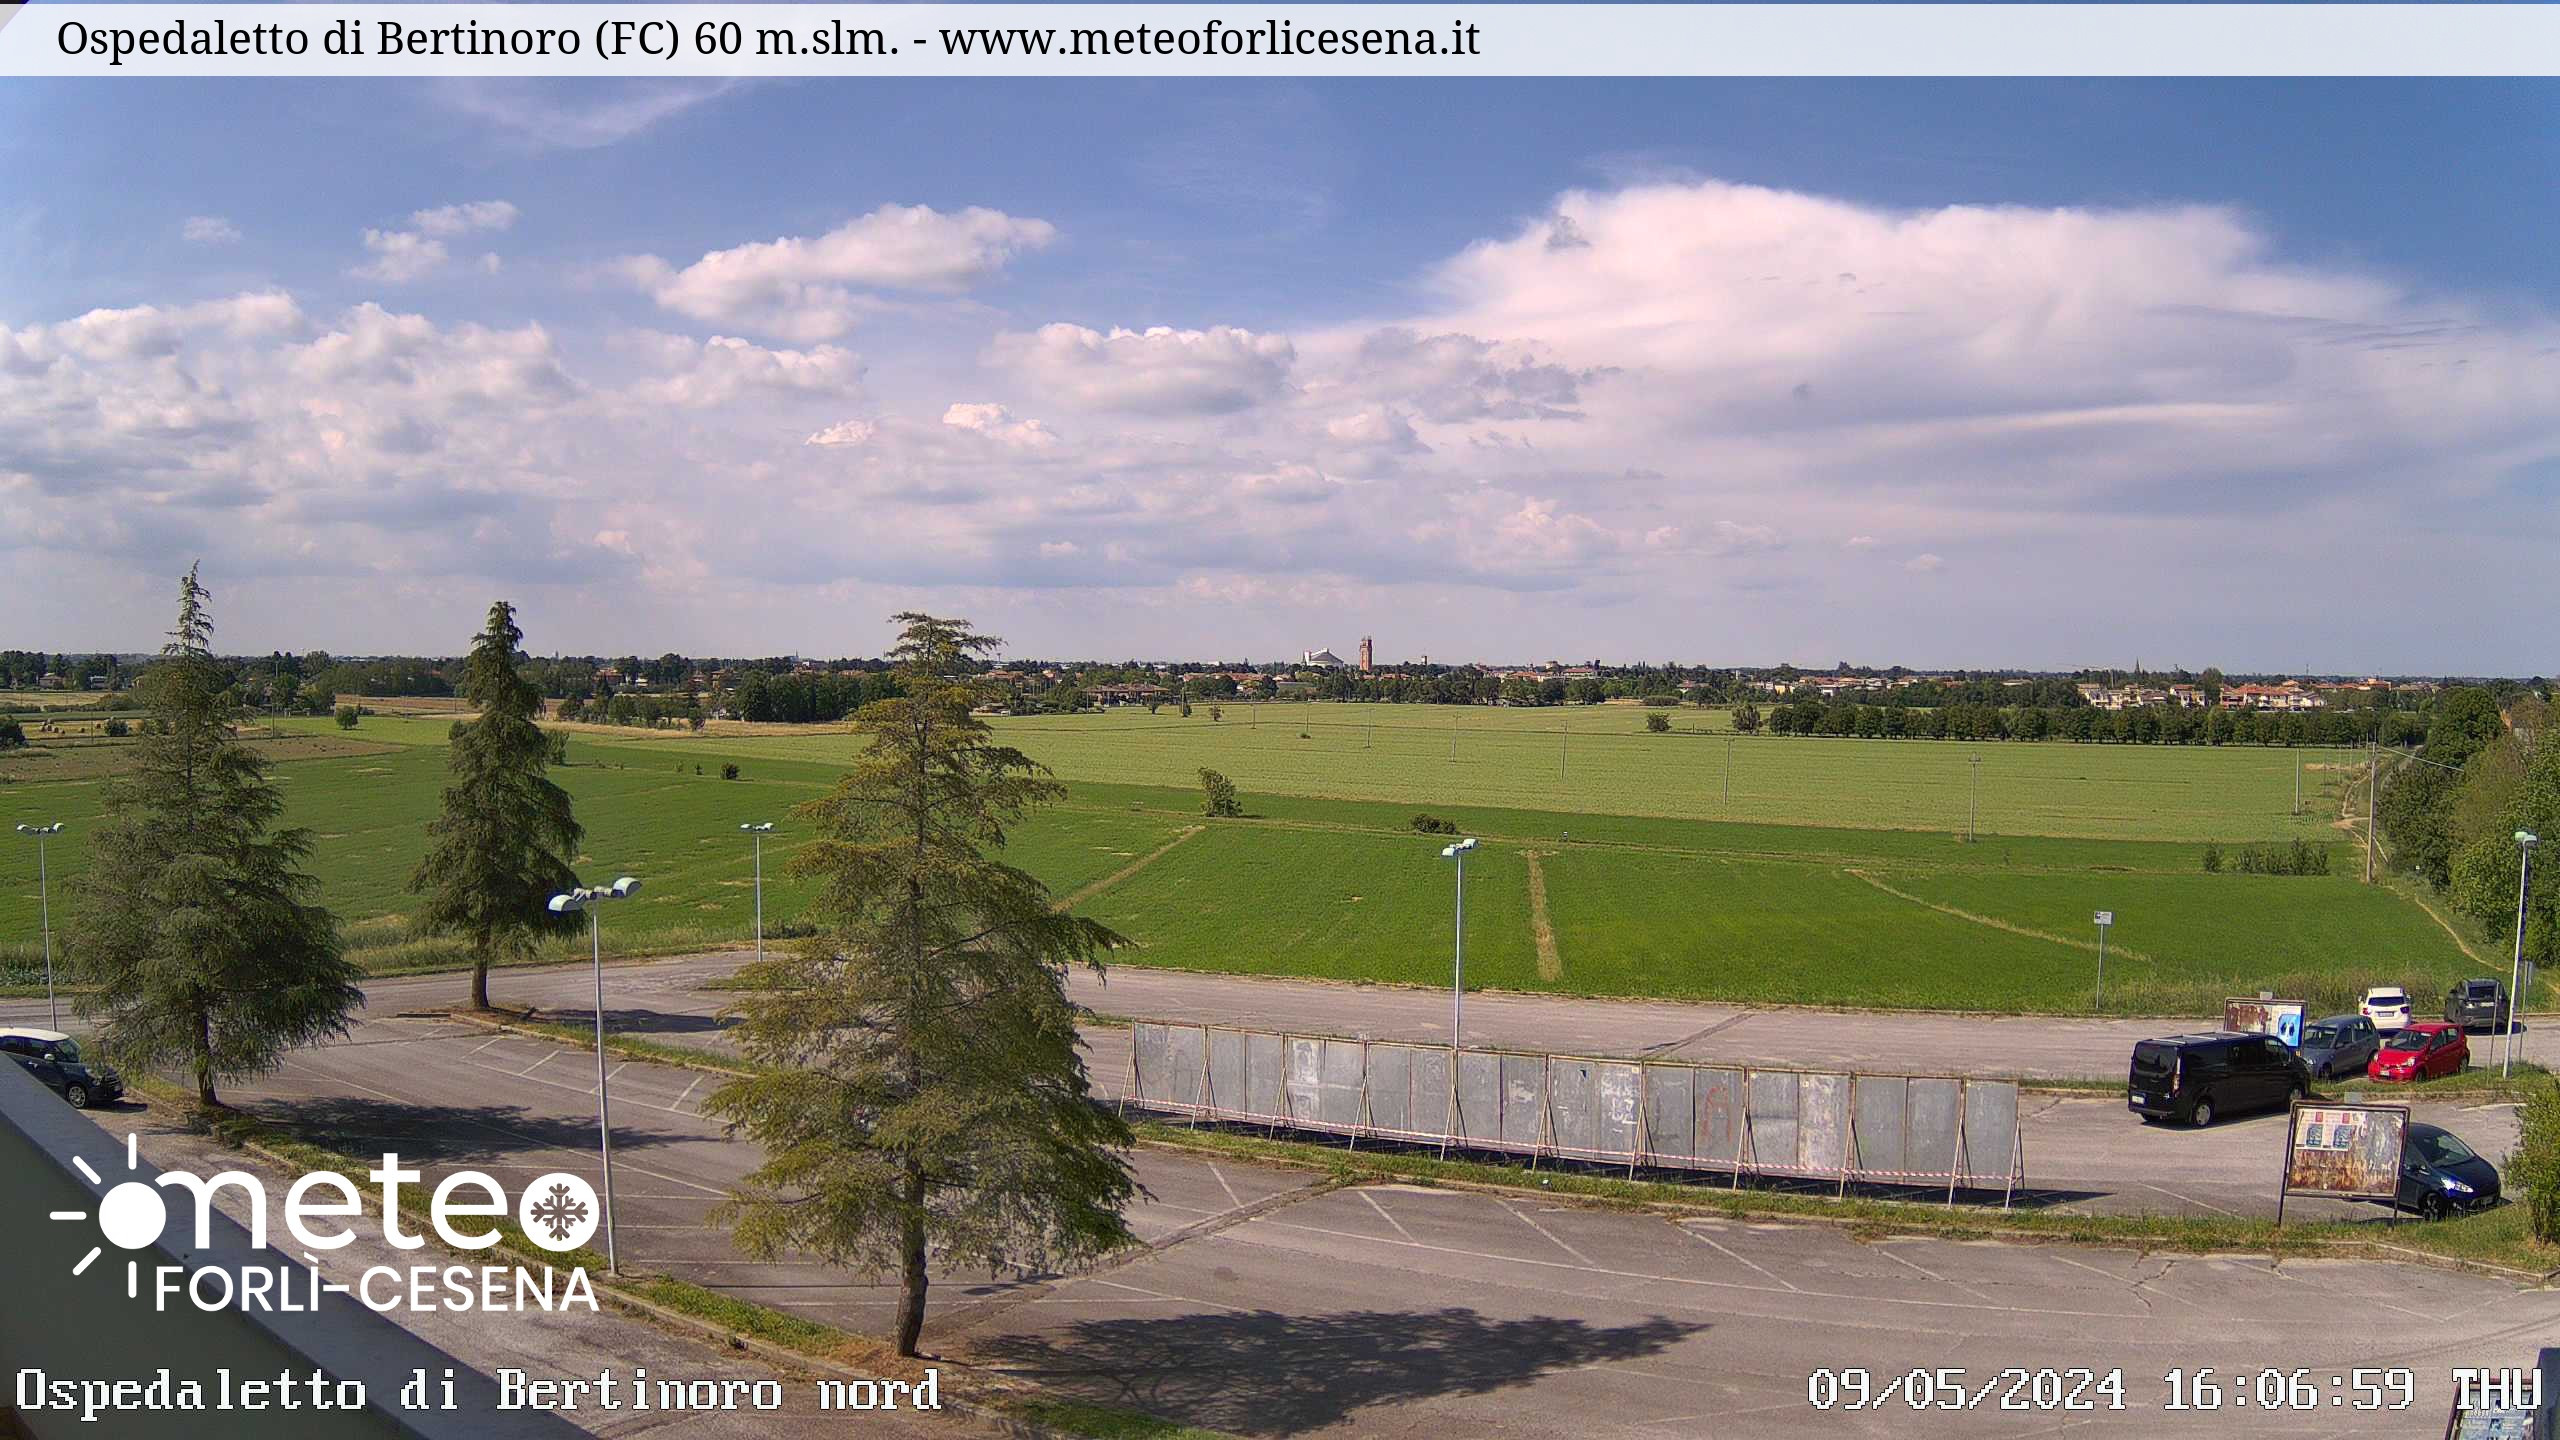 Webcam Emilia Romagna: Ospedaletto di Bertinoro, Forlì